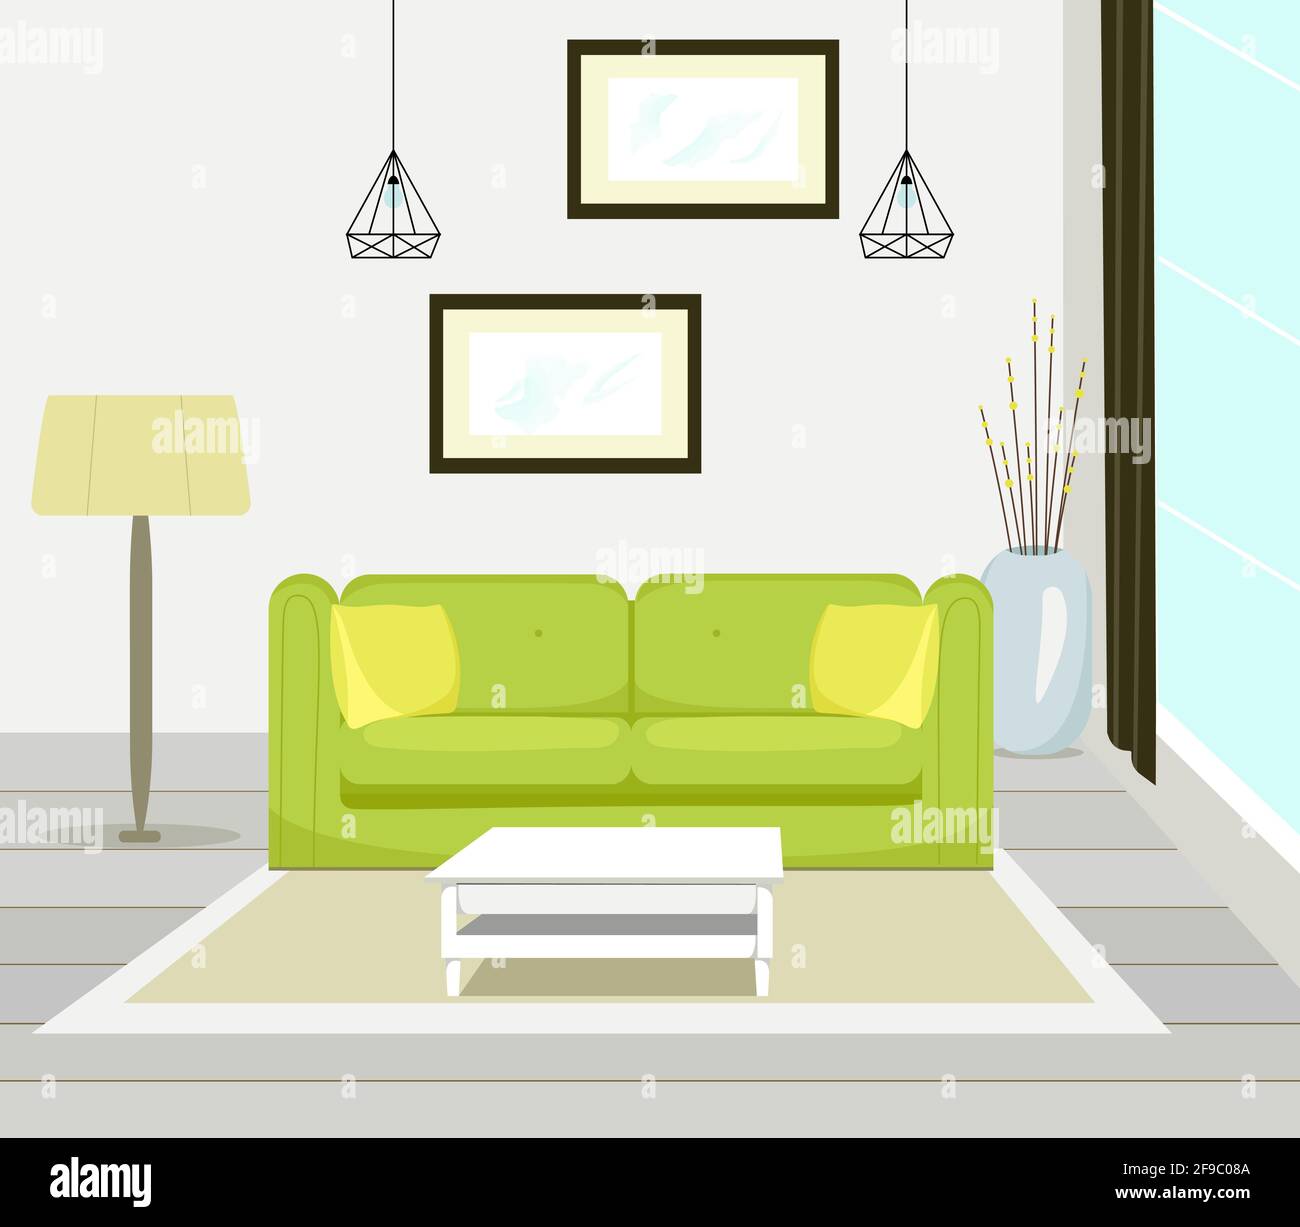 Intérieur de salon moderne avec meubles de canapé, table, lampadaire, grande fenêtre, peinture murale, illustration vectorielle de style plat Illustration de Vecteur